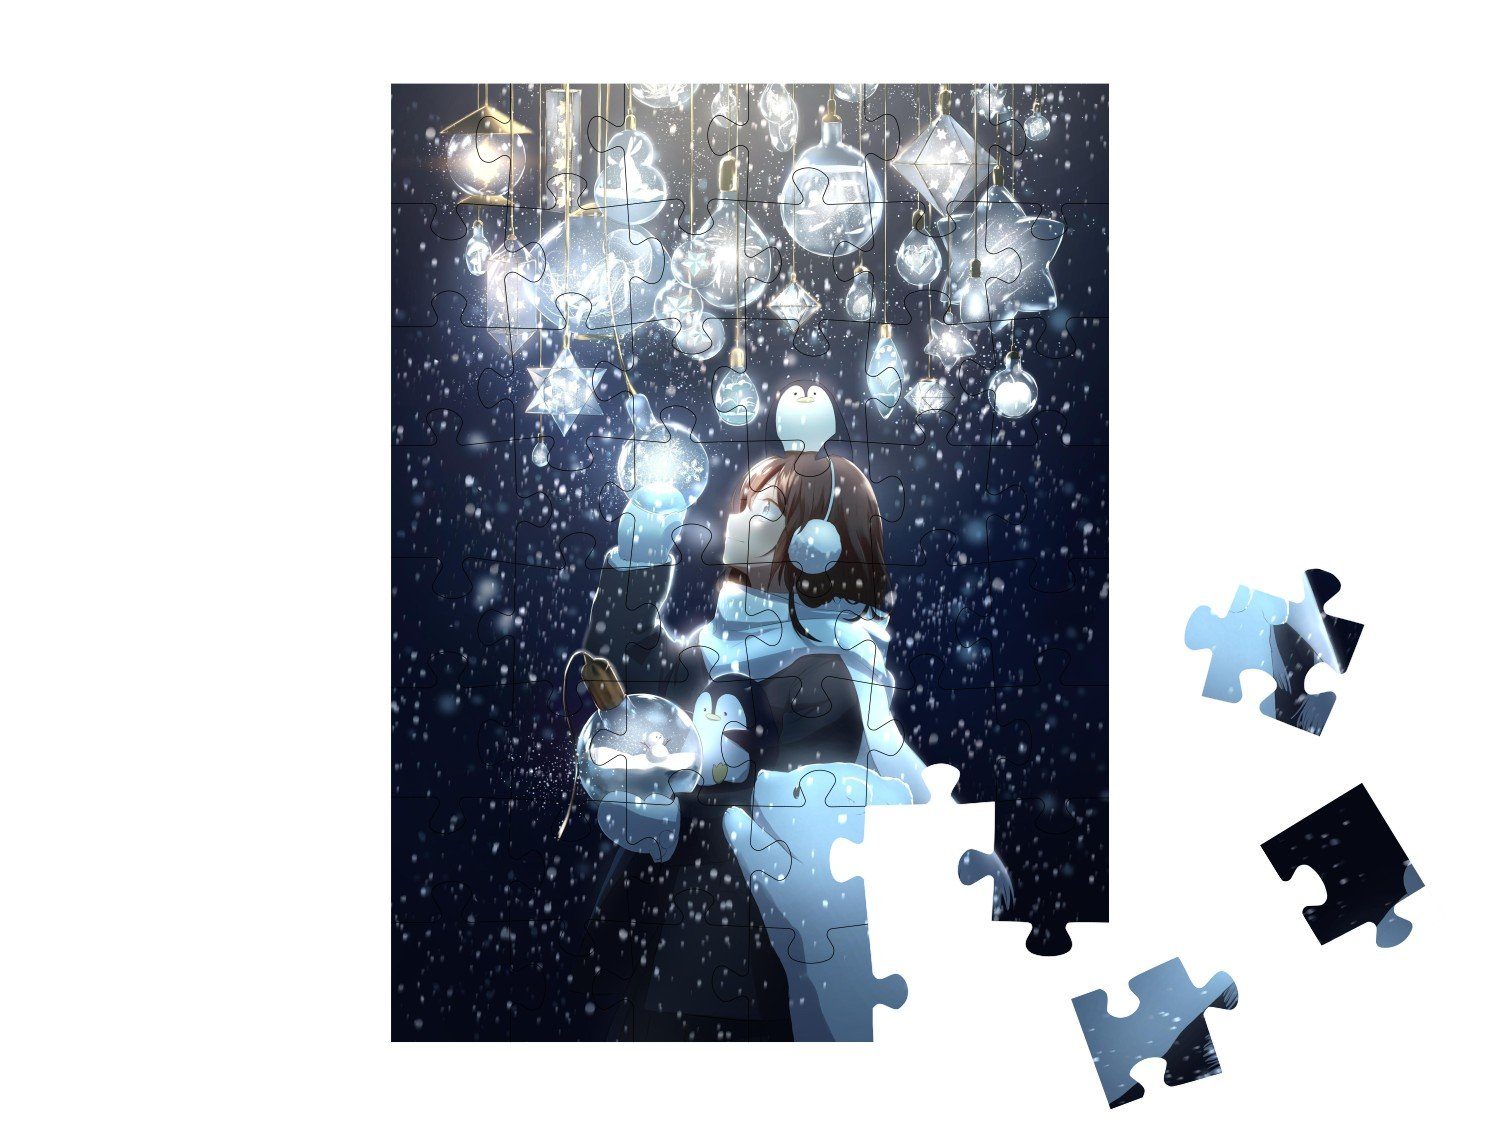 Anime Puzzleteile, puzzleYOU 48 Anime-Mädchens, puzzleYOU-Kollektionen Weihnachten, Zeichnung Puzzle eines